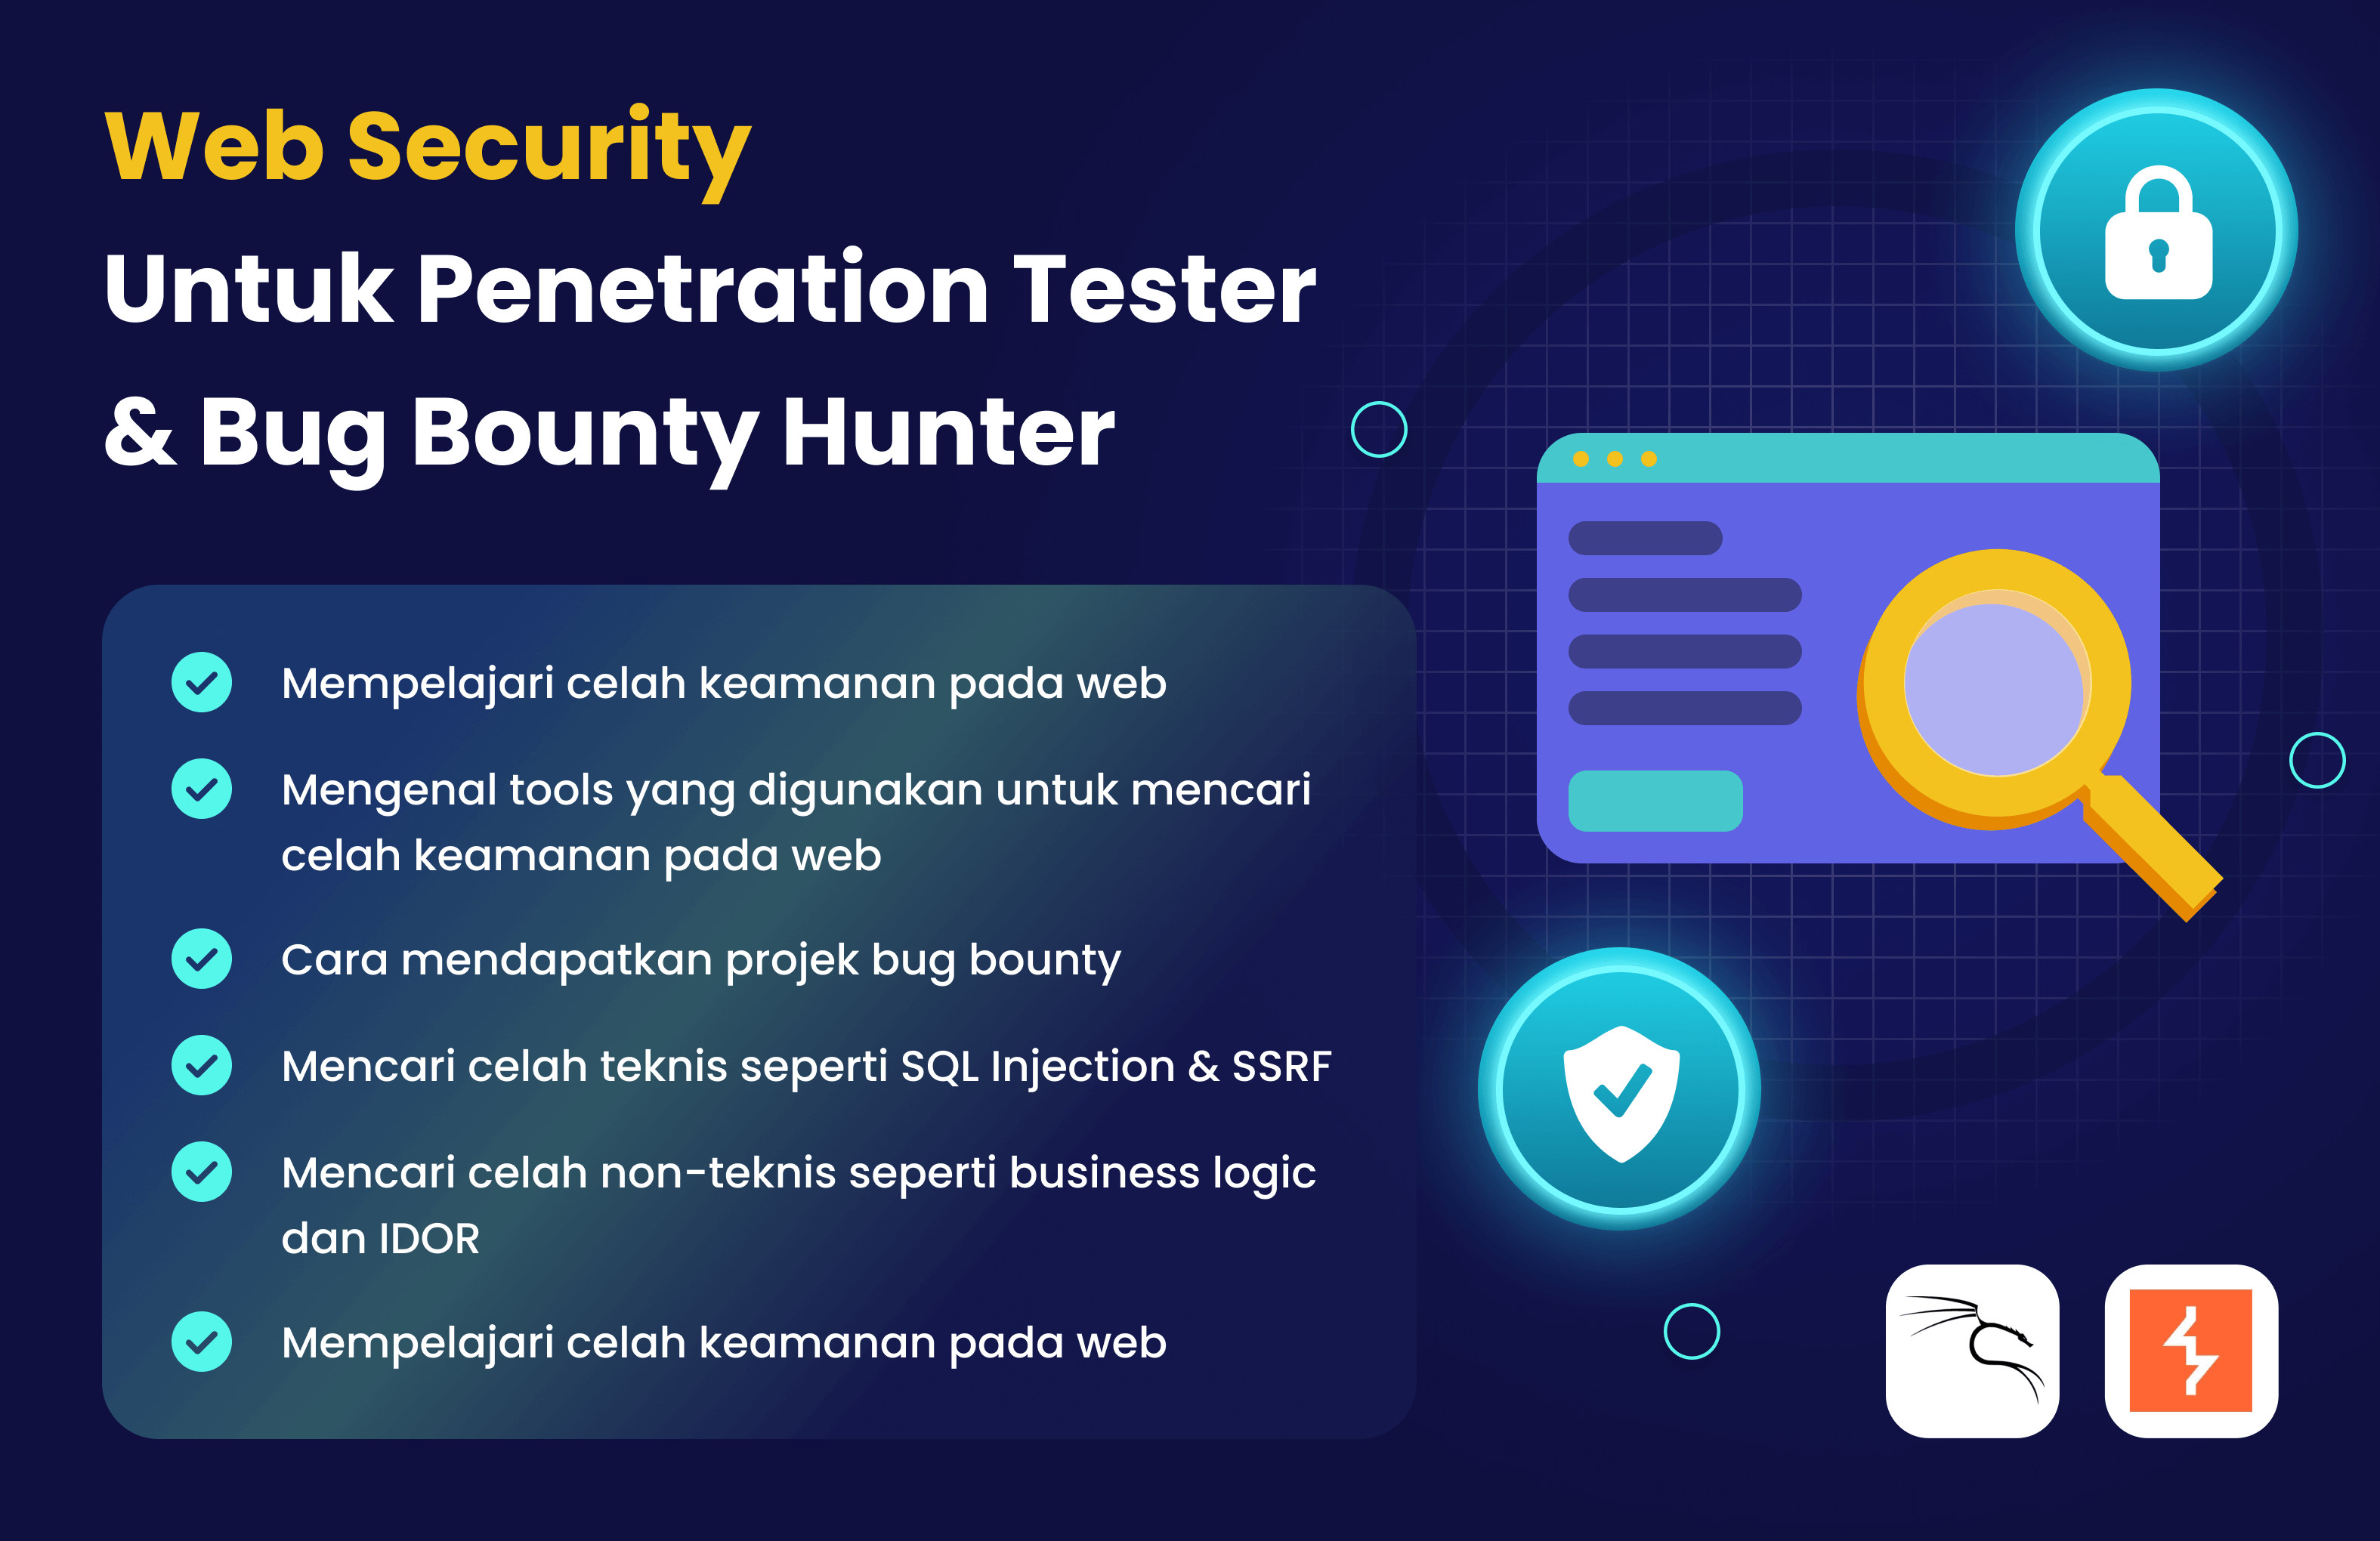 Web Security untuk Penetration Tester dan Bug Bounty Hunter di BuildWith Angga